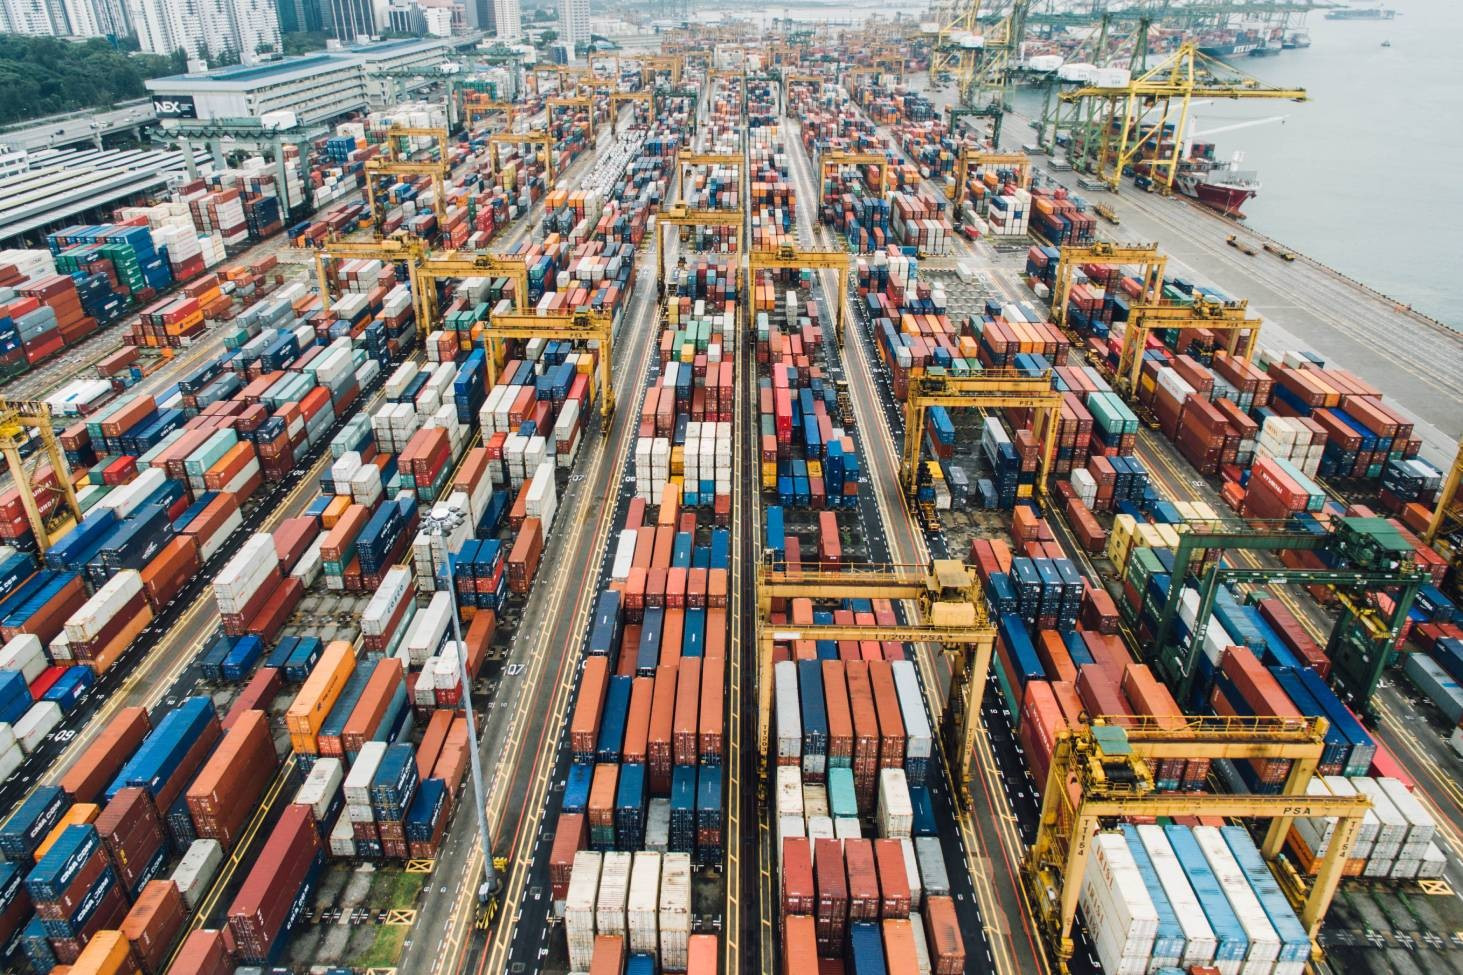 Chi phí dịch vụ logistics Việt Nam quá cao đang biến những ưu thế tiềm năng trở thành rào cản trong tiến trình hội nhập kinh tế quốc tế